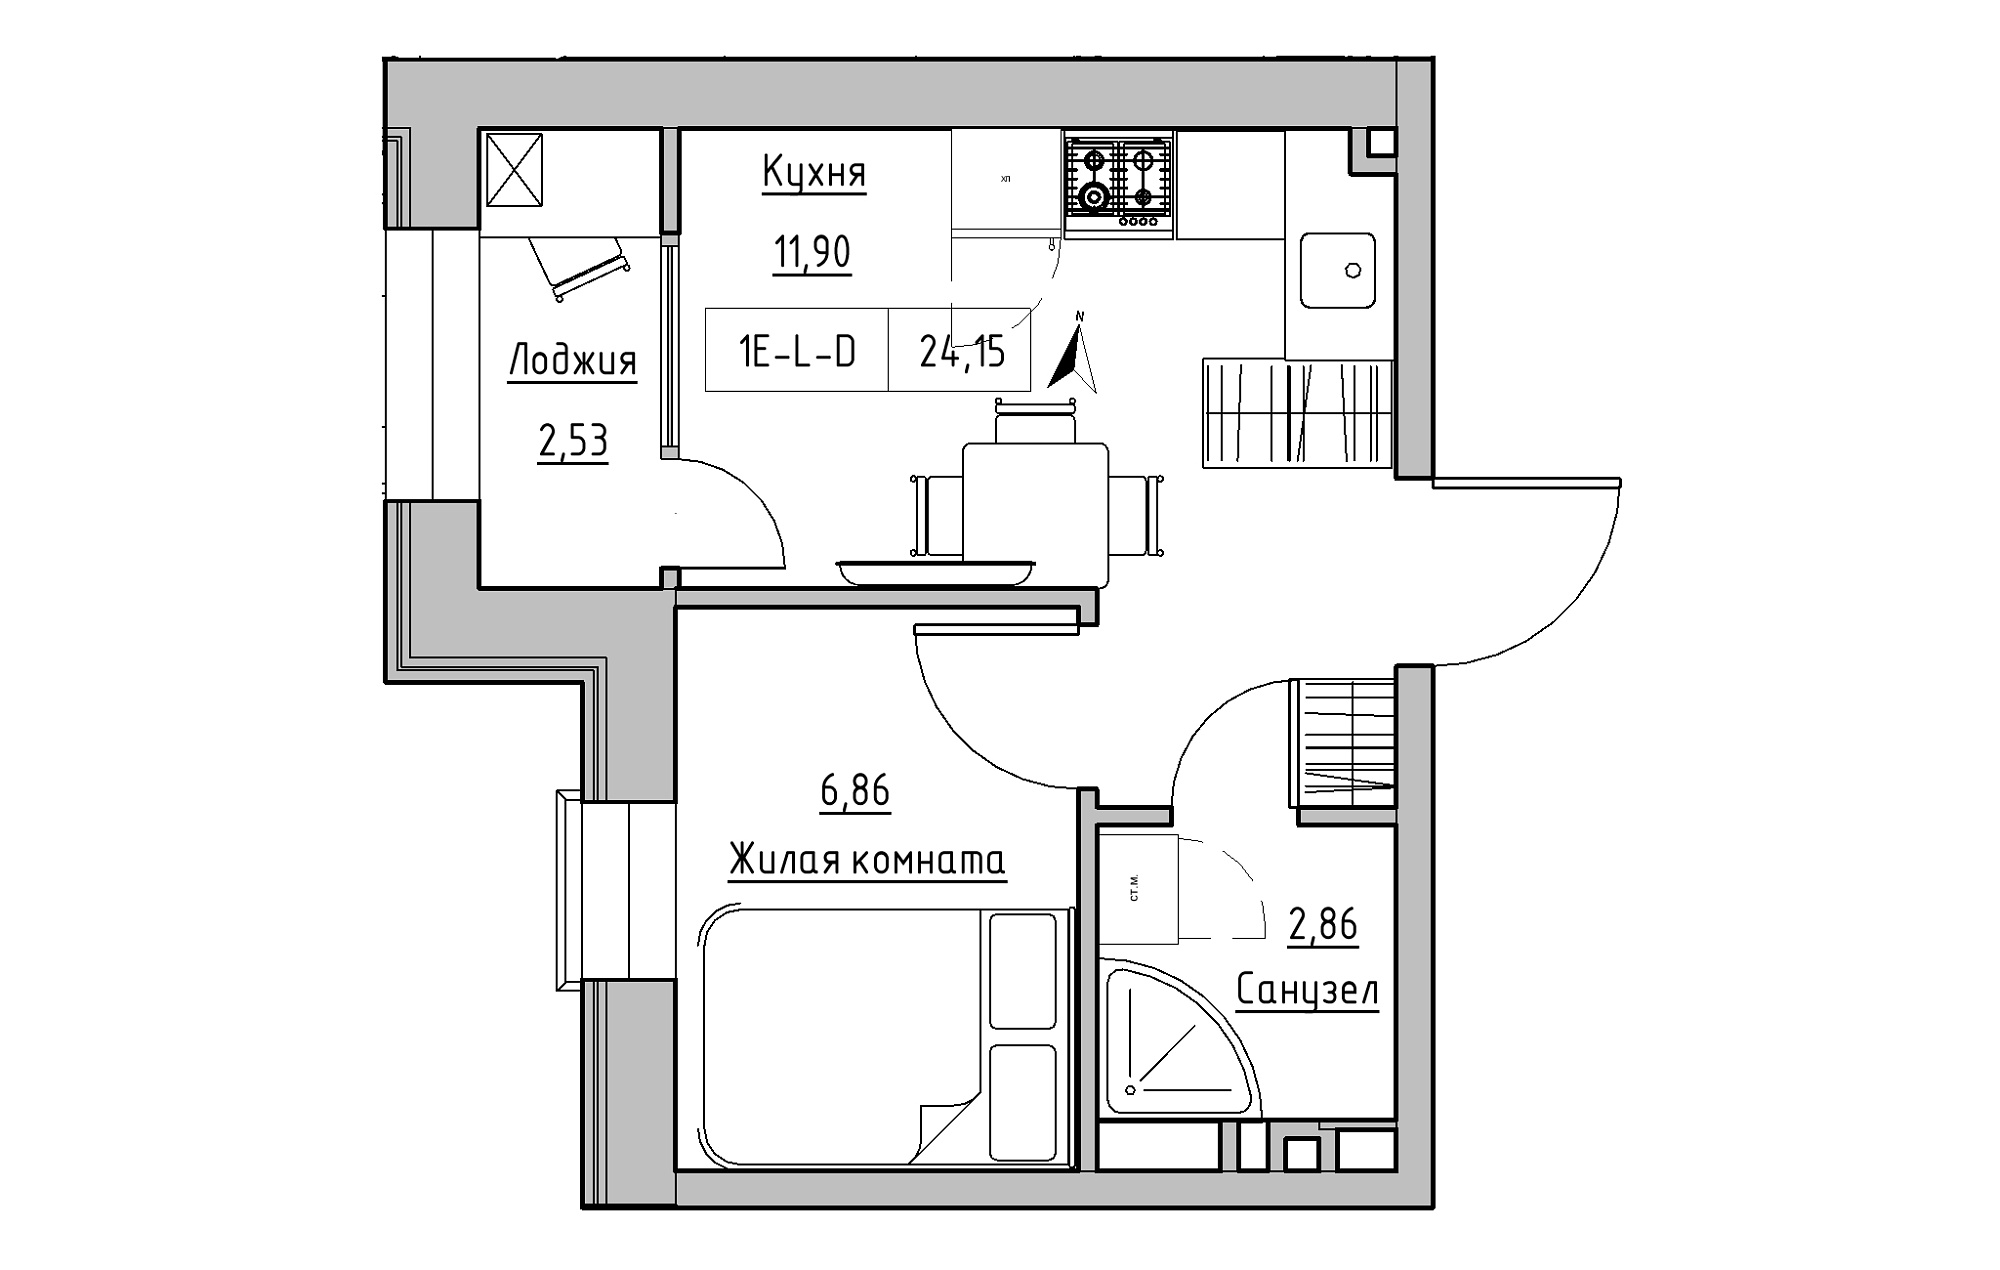 Планировка 1-к квартира площей 24.15м2, KS-019-03/0001.